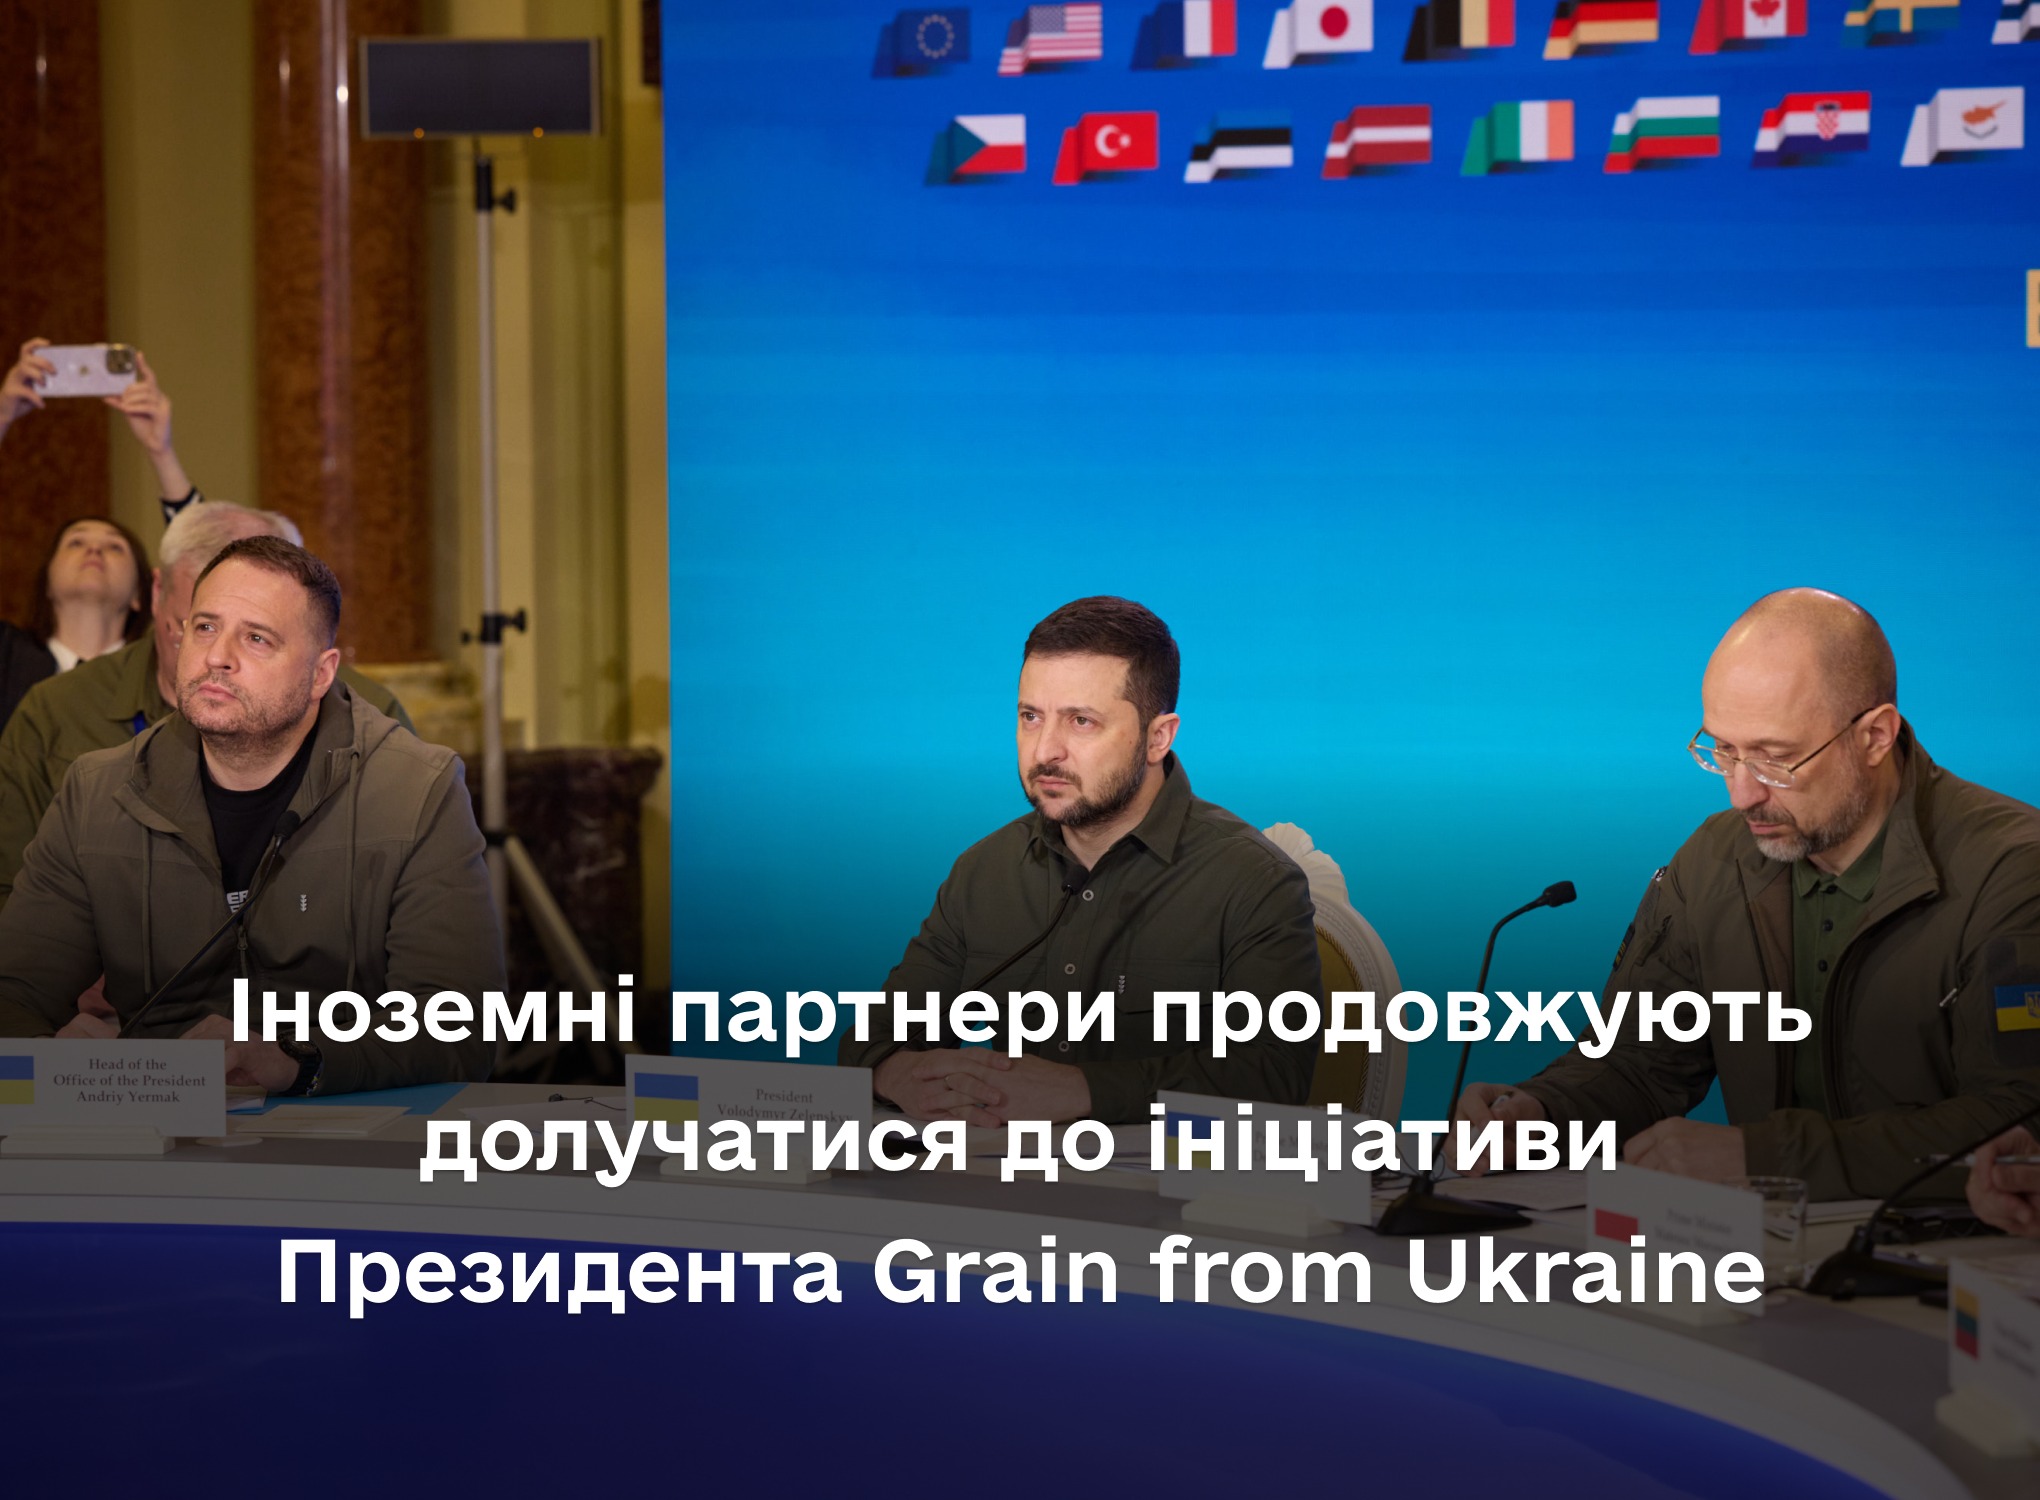 Іноземні партнери продовжують долучатися до ініціативи Президента Grain from Ukraine